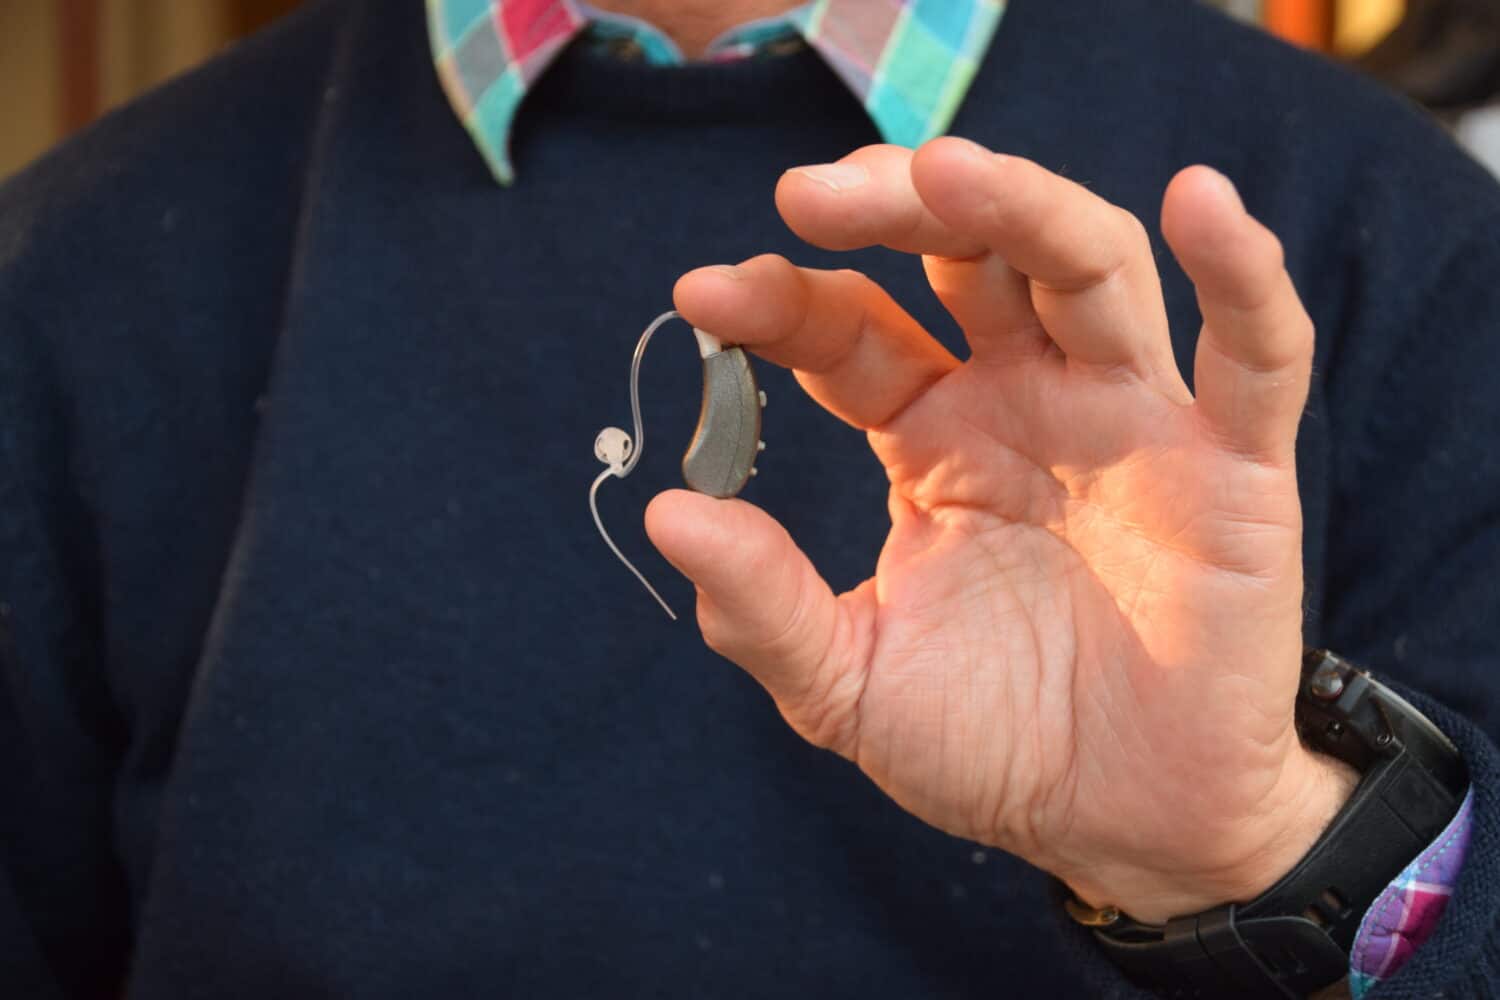 Man holding the Lexie Lumen hearing aid